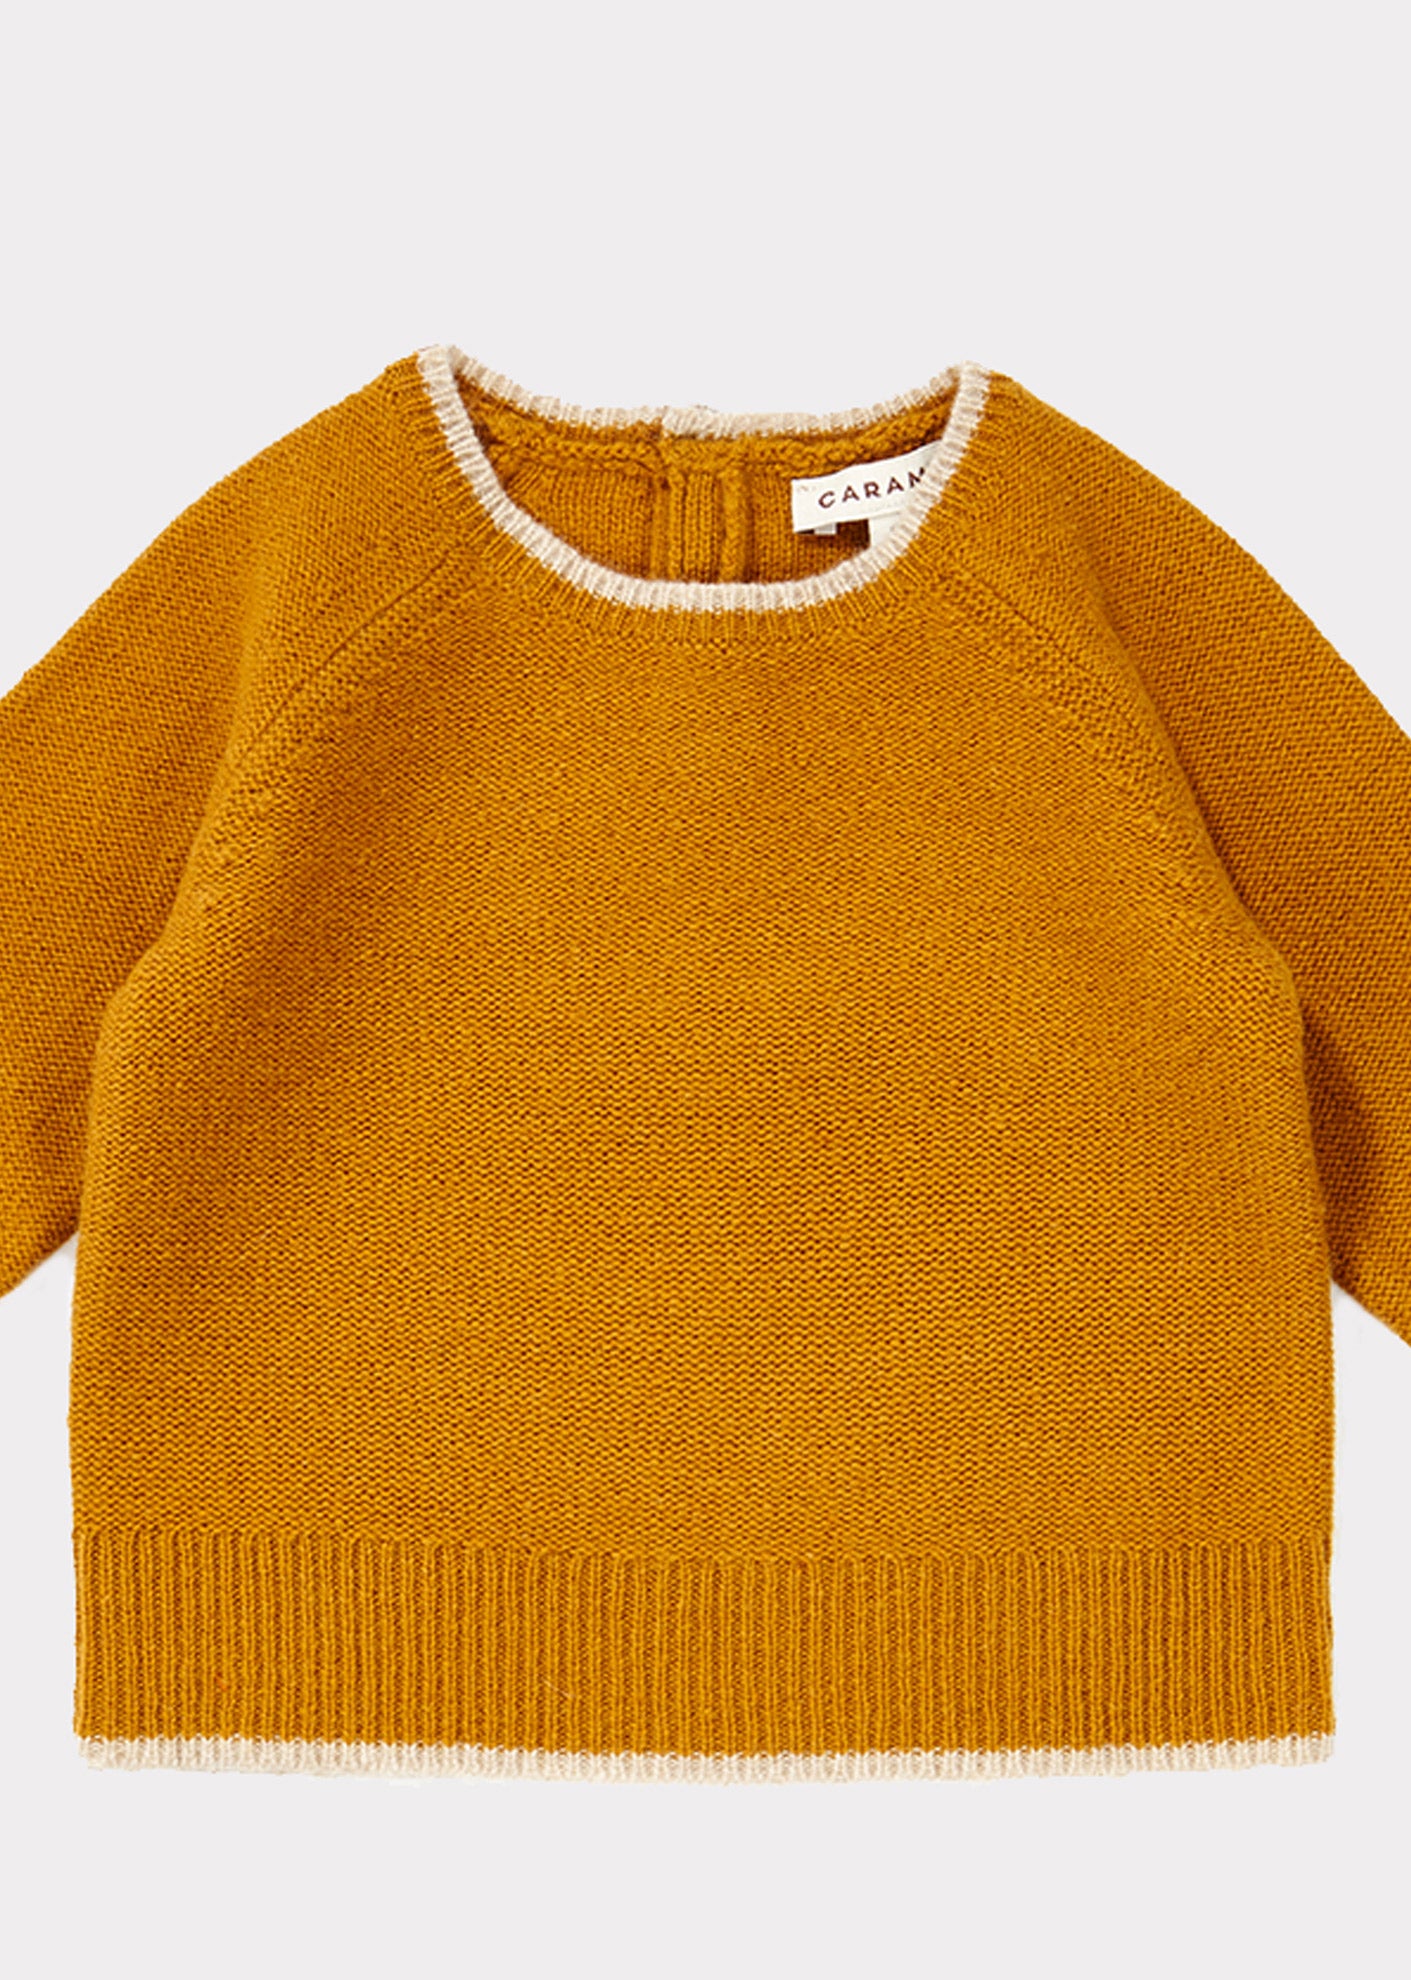 Baby Girls Yellow Wool Sweater